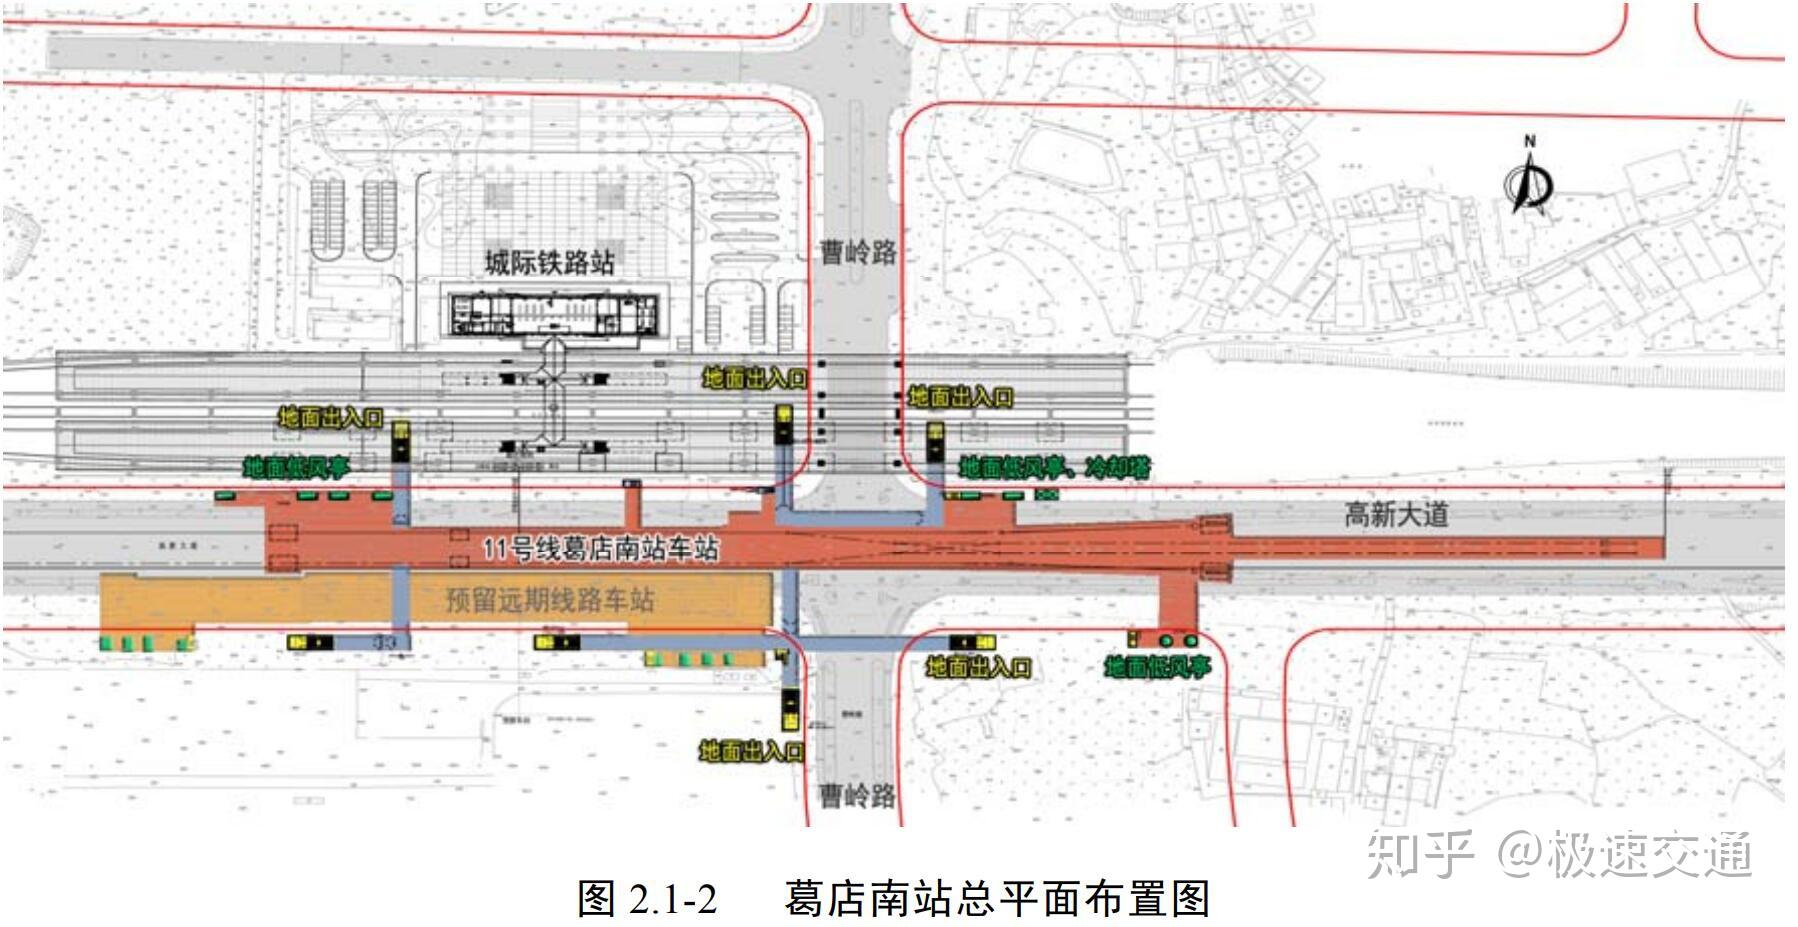 武汉地铁11号线三期环境影响报告书征求意见稿公示啦